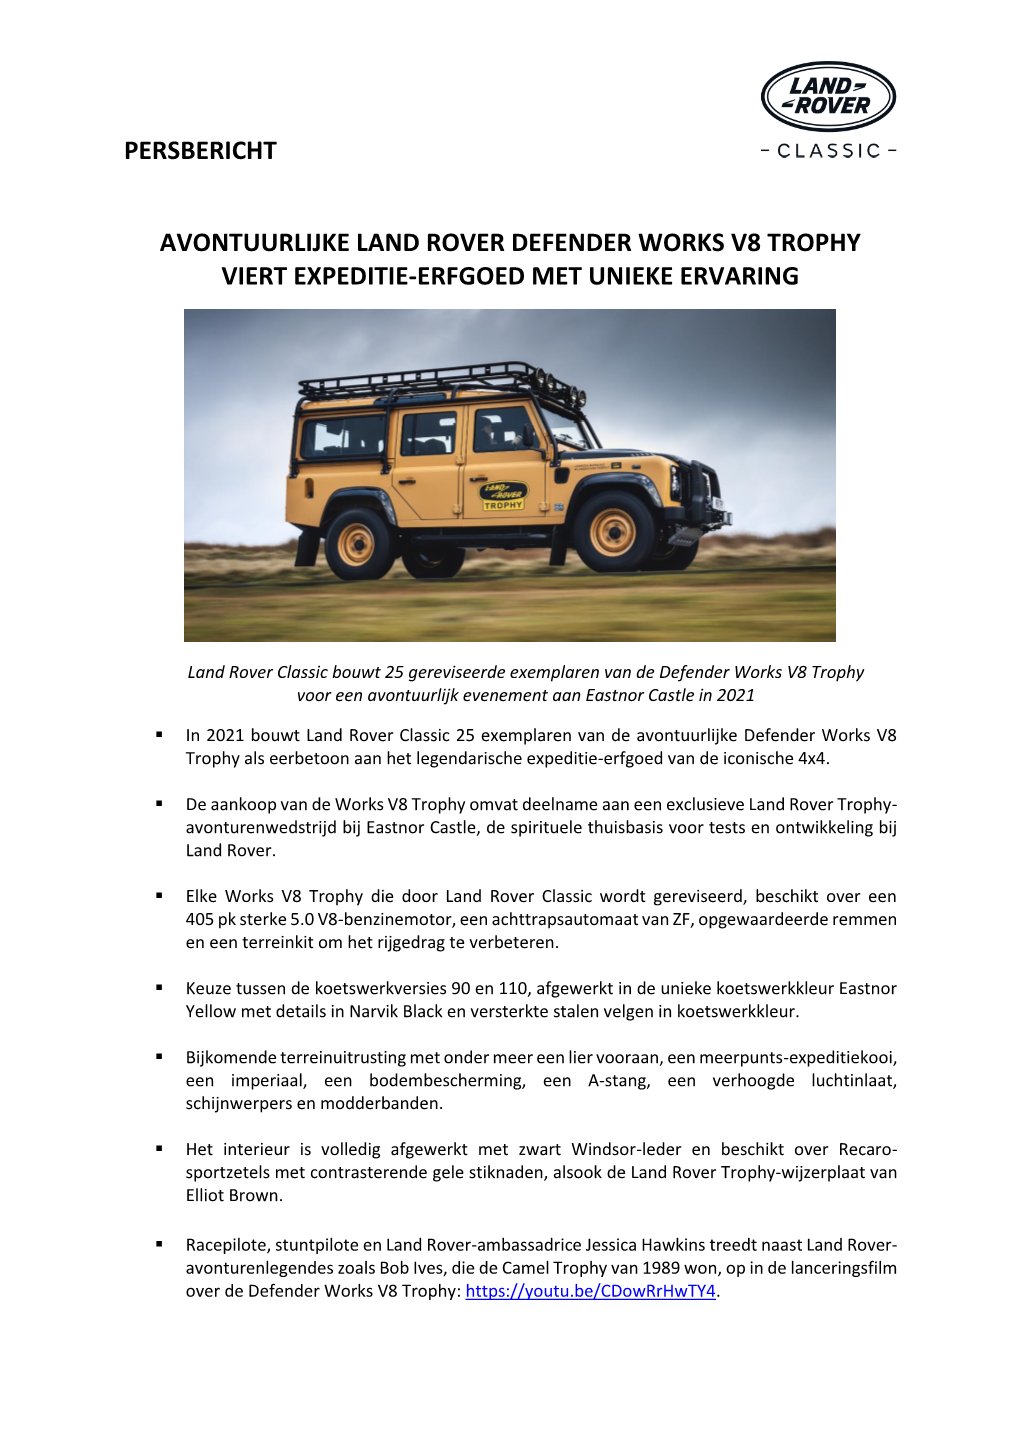 Persbericht Avontuurlijke Land Rover Defender